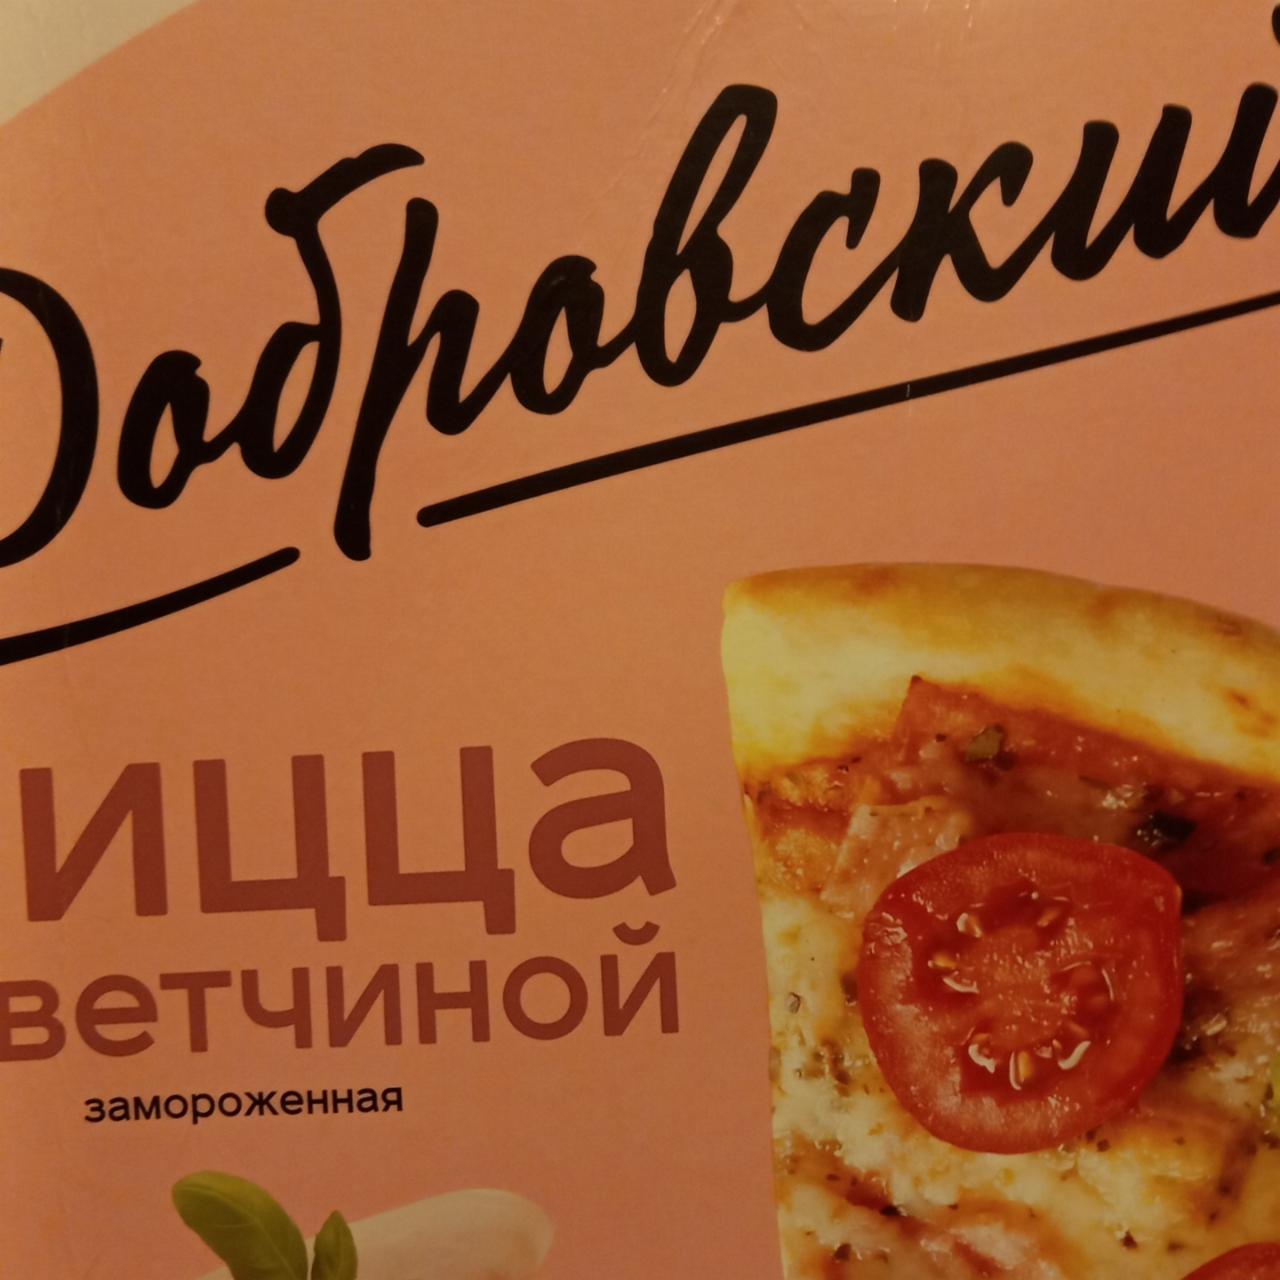 Фото - пицца с ветчиной Добровский